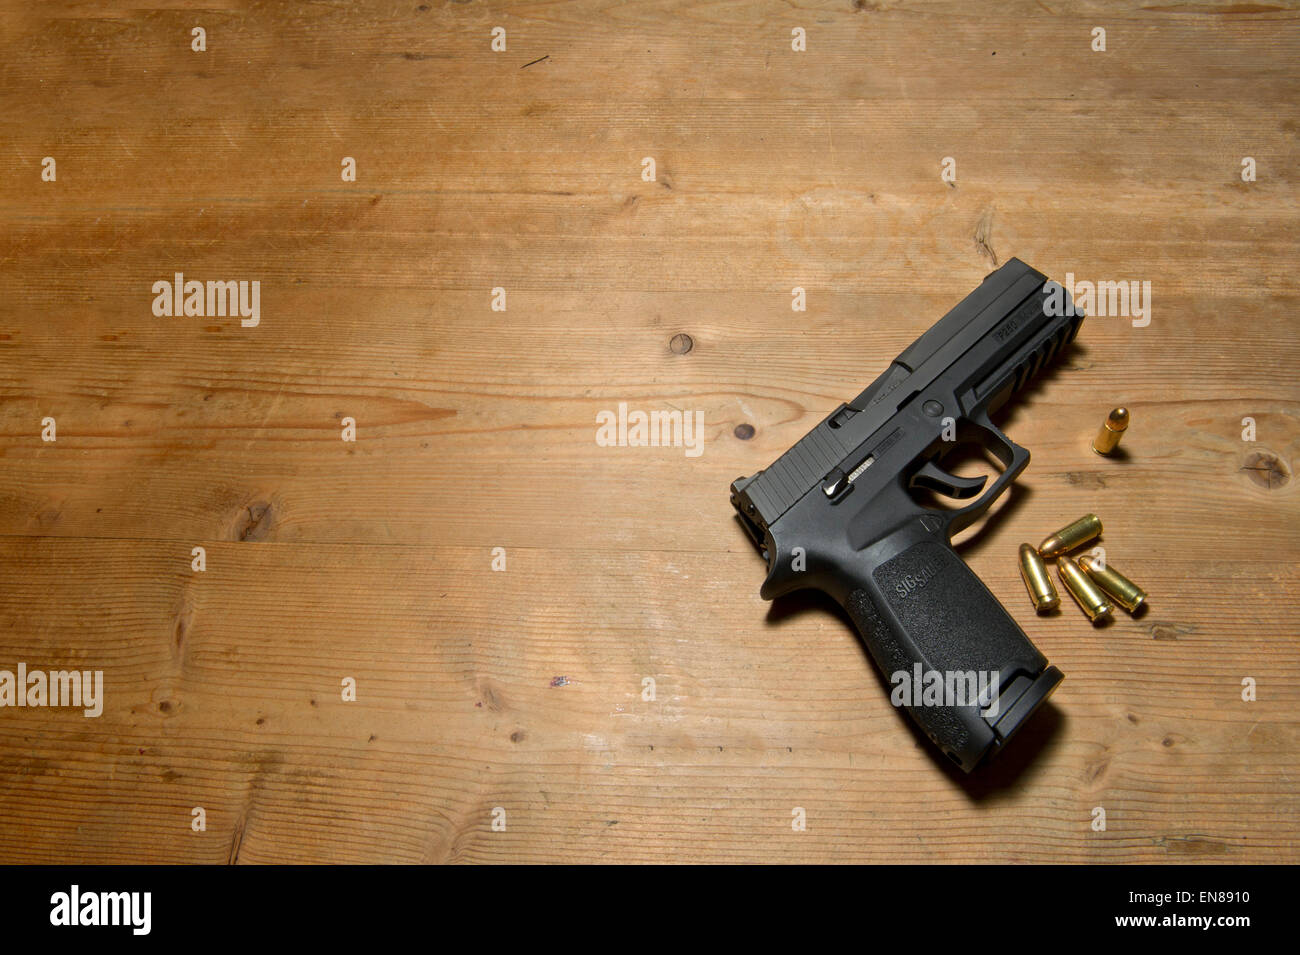 Eine Sig P250 halbautomatische Pistole mit 9mm.parabellum Munition, was darauf hindeutet, Mord, Geheimnis, Tod, töten, Pistole, schießen Stockfoto